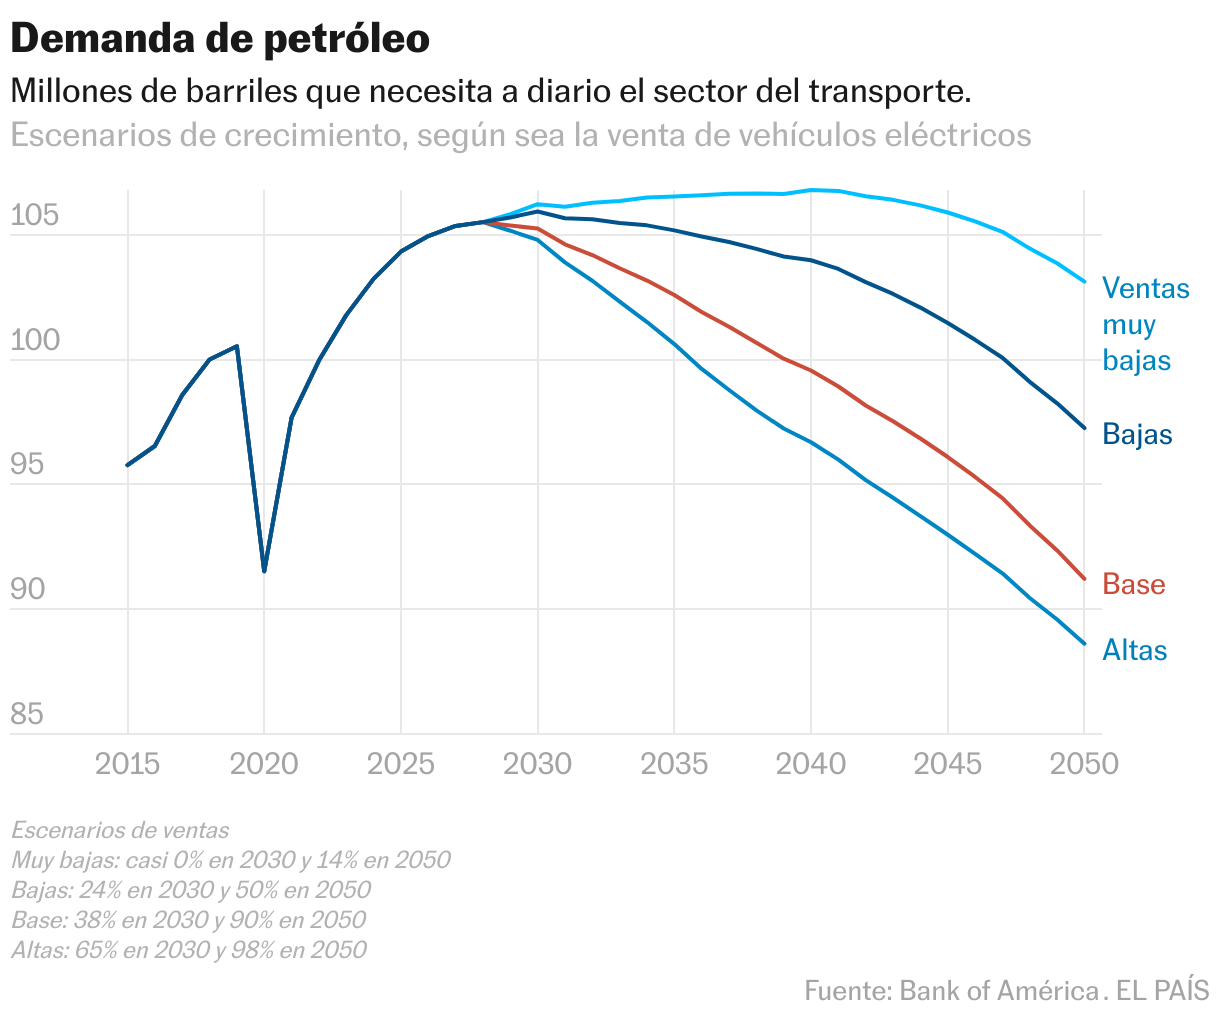 Escenarios de reducción del consumo mundial de petróleo entre 2015 y 2050